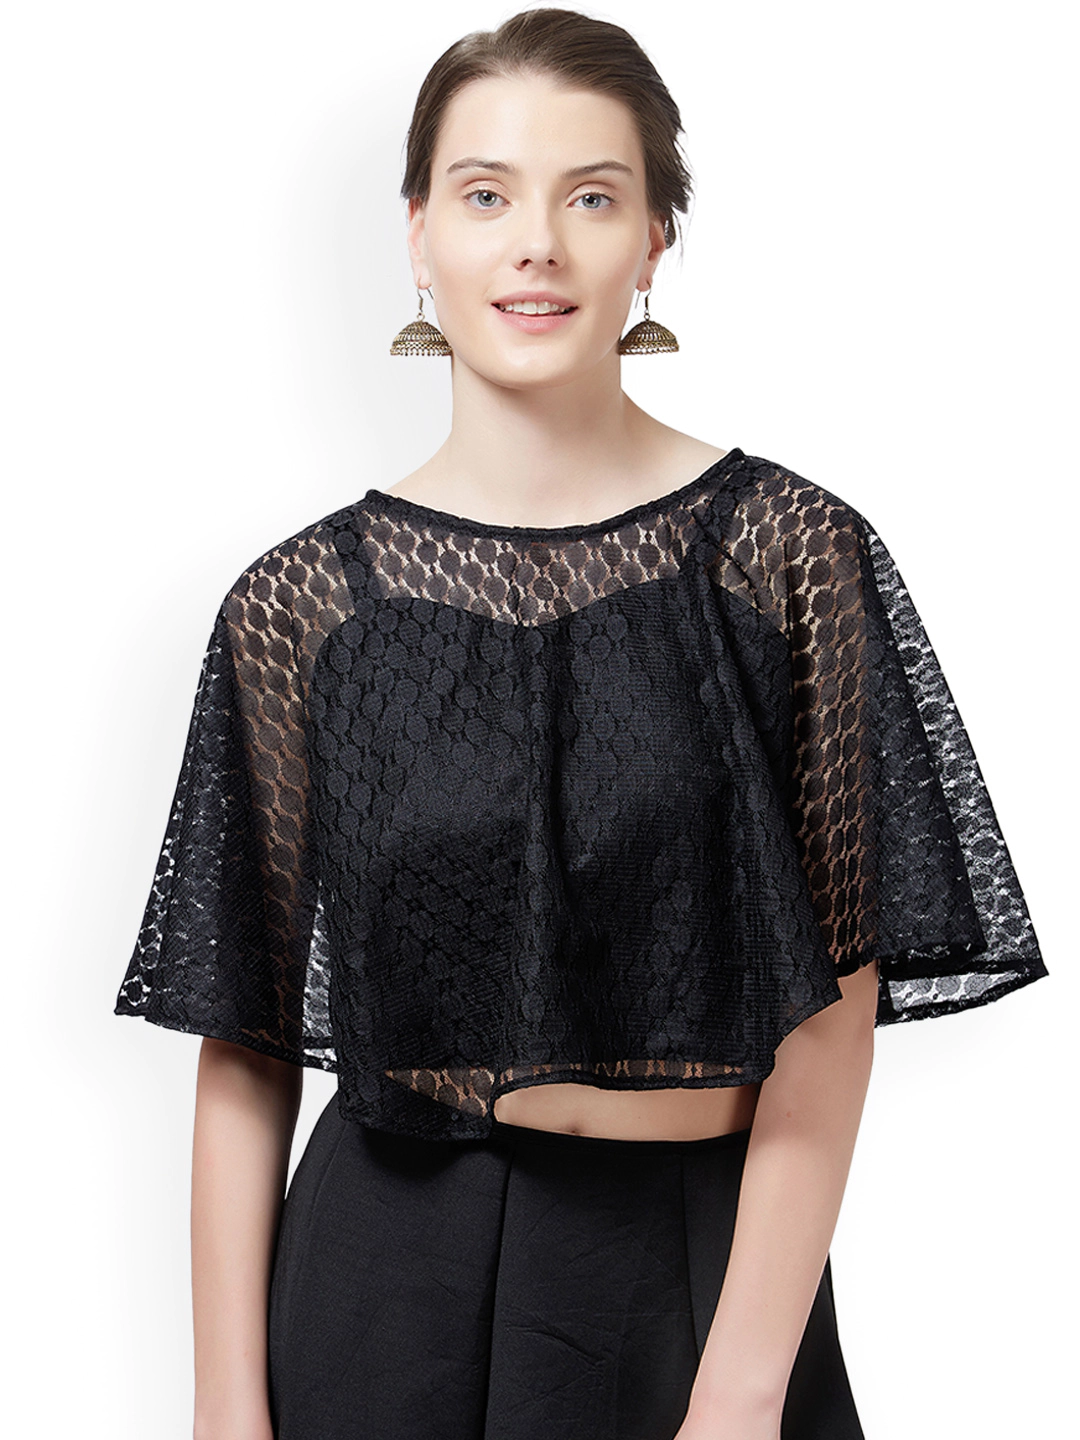 Black sheer net blouse